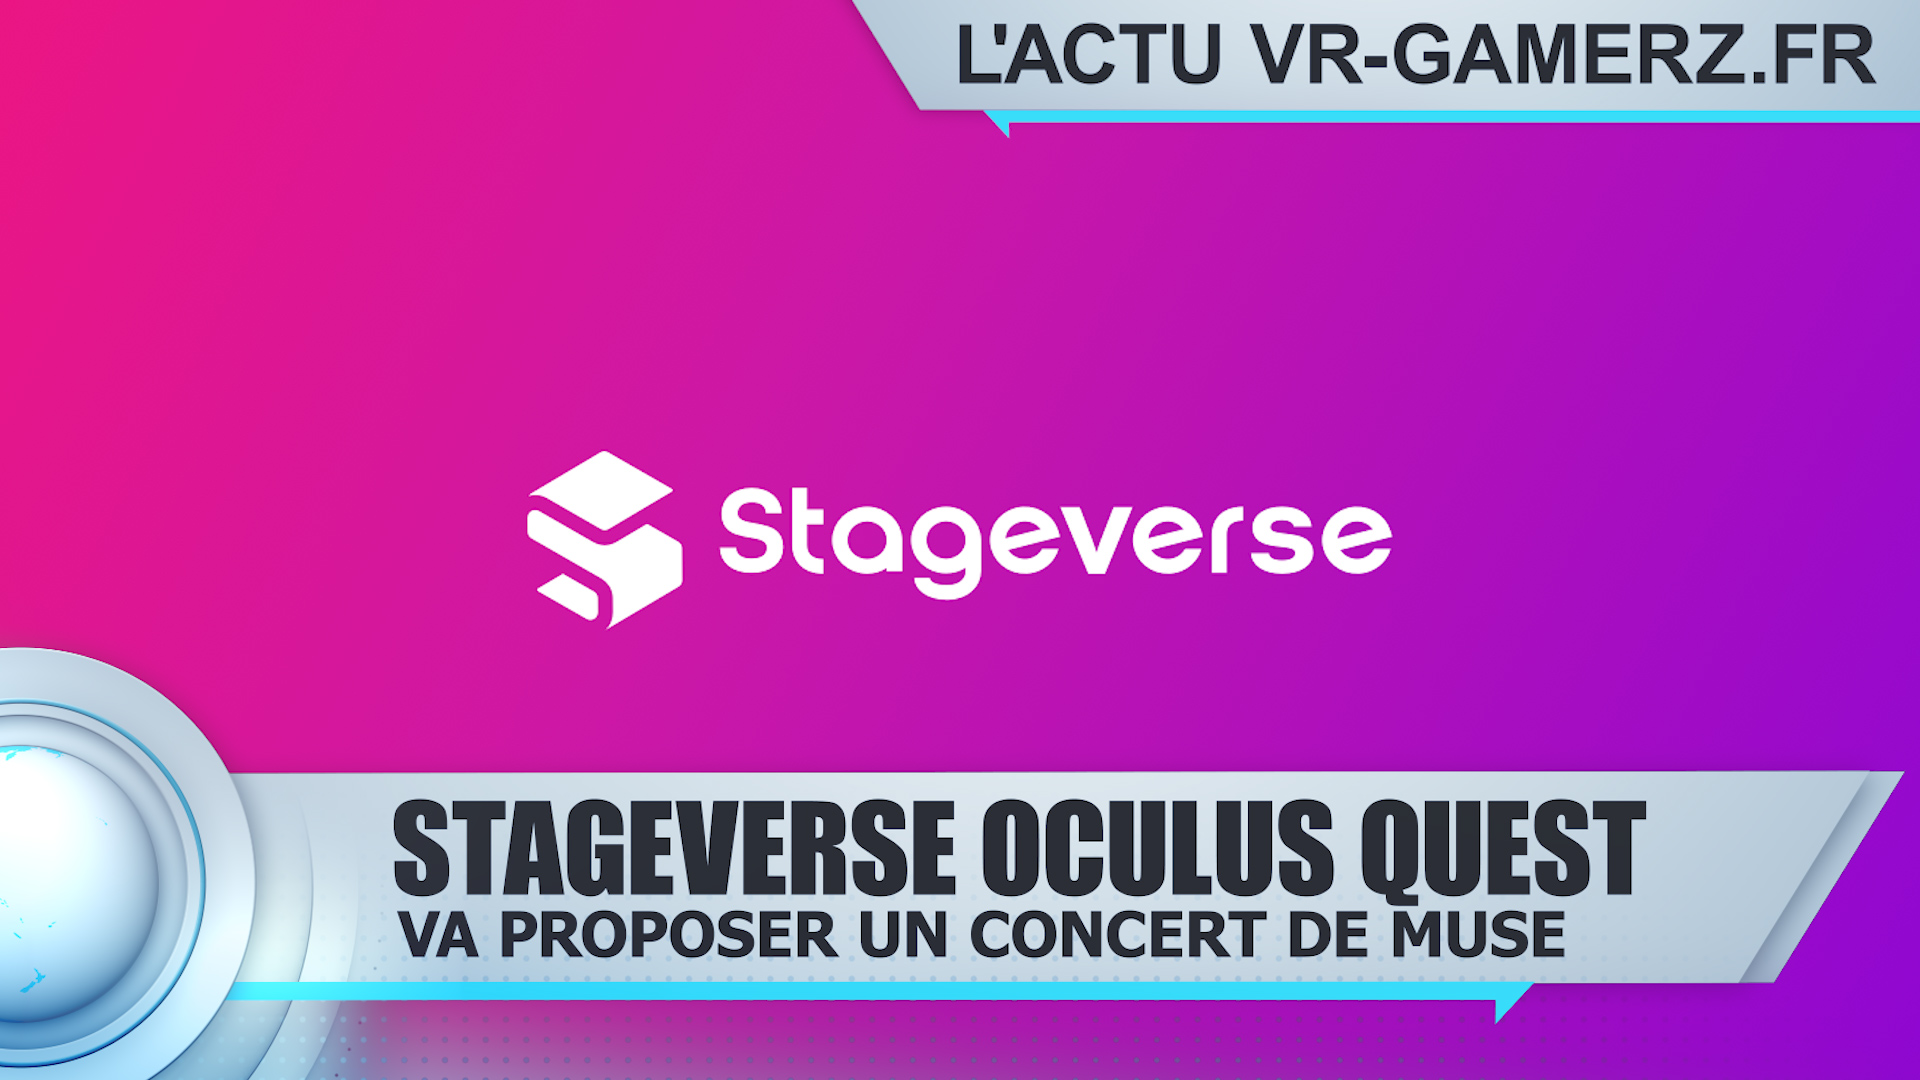 Stageverse Oculus quest :  Va vous proposer la tournée de Muse